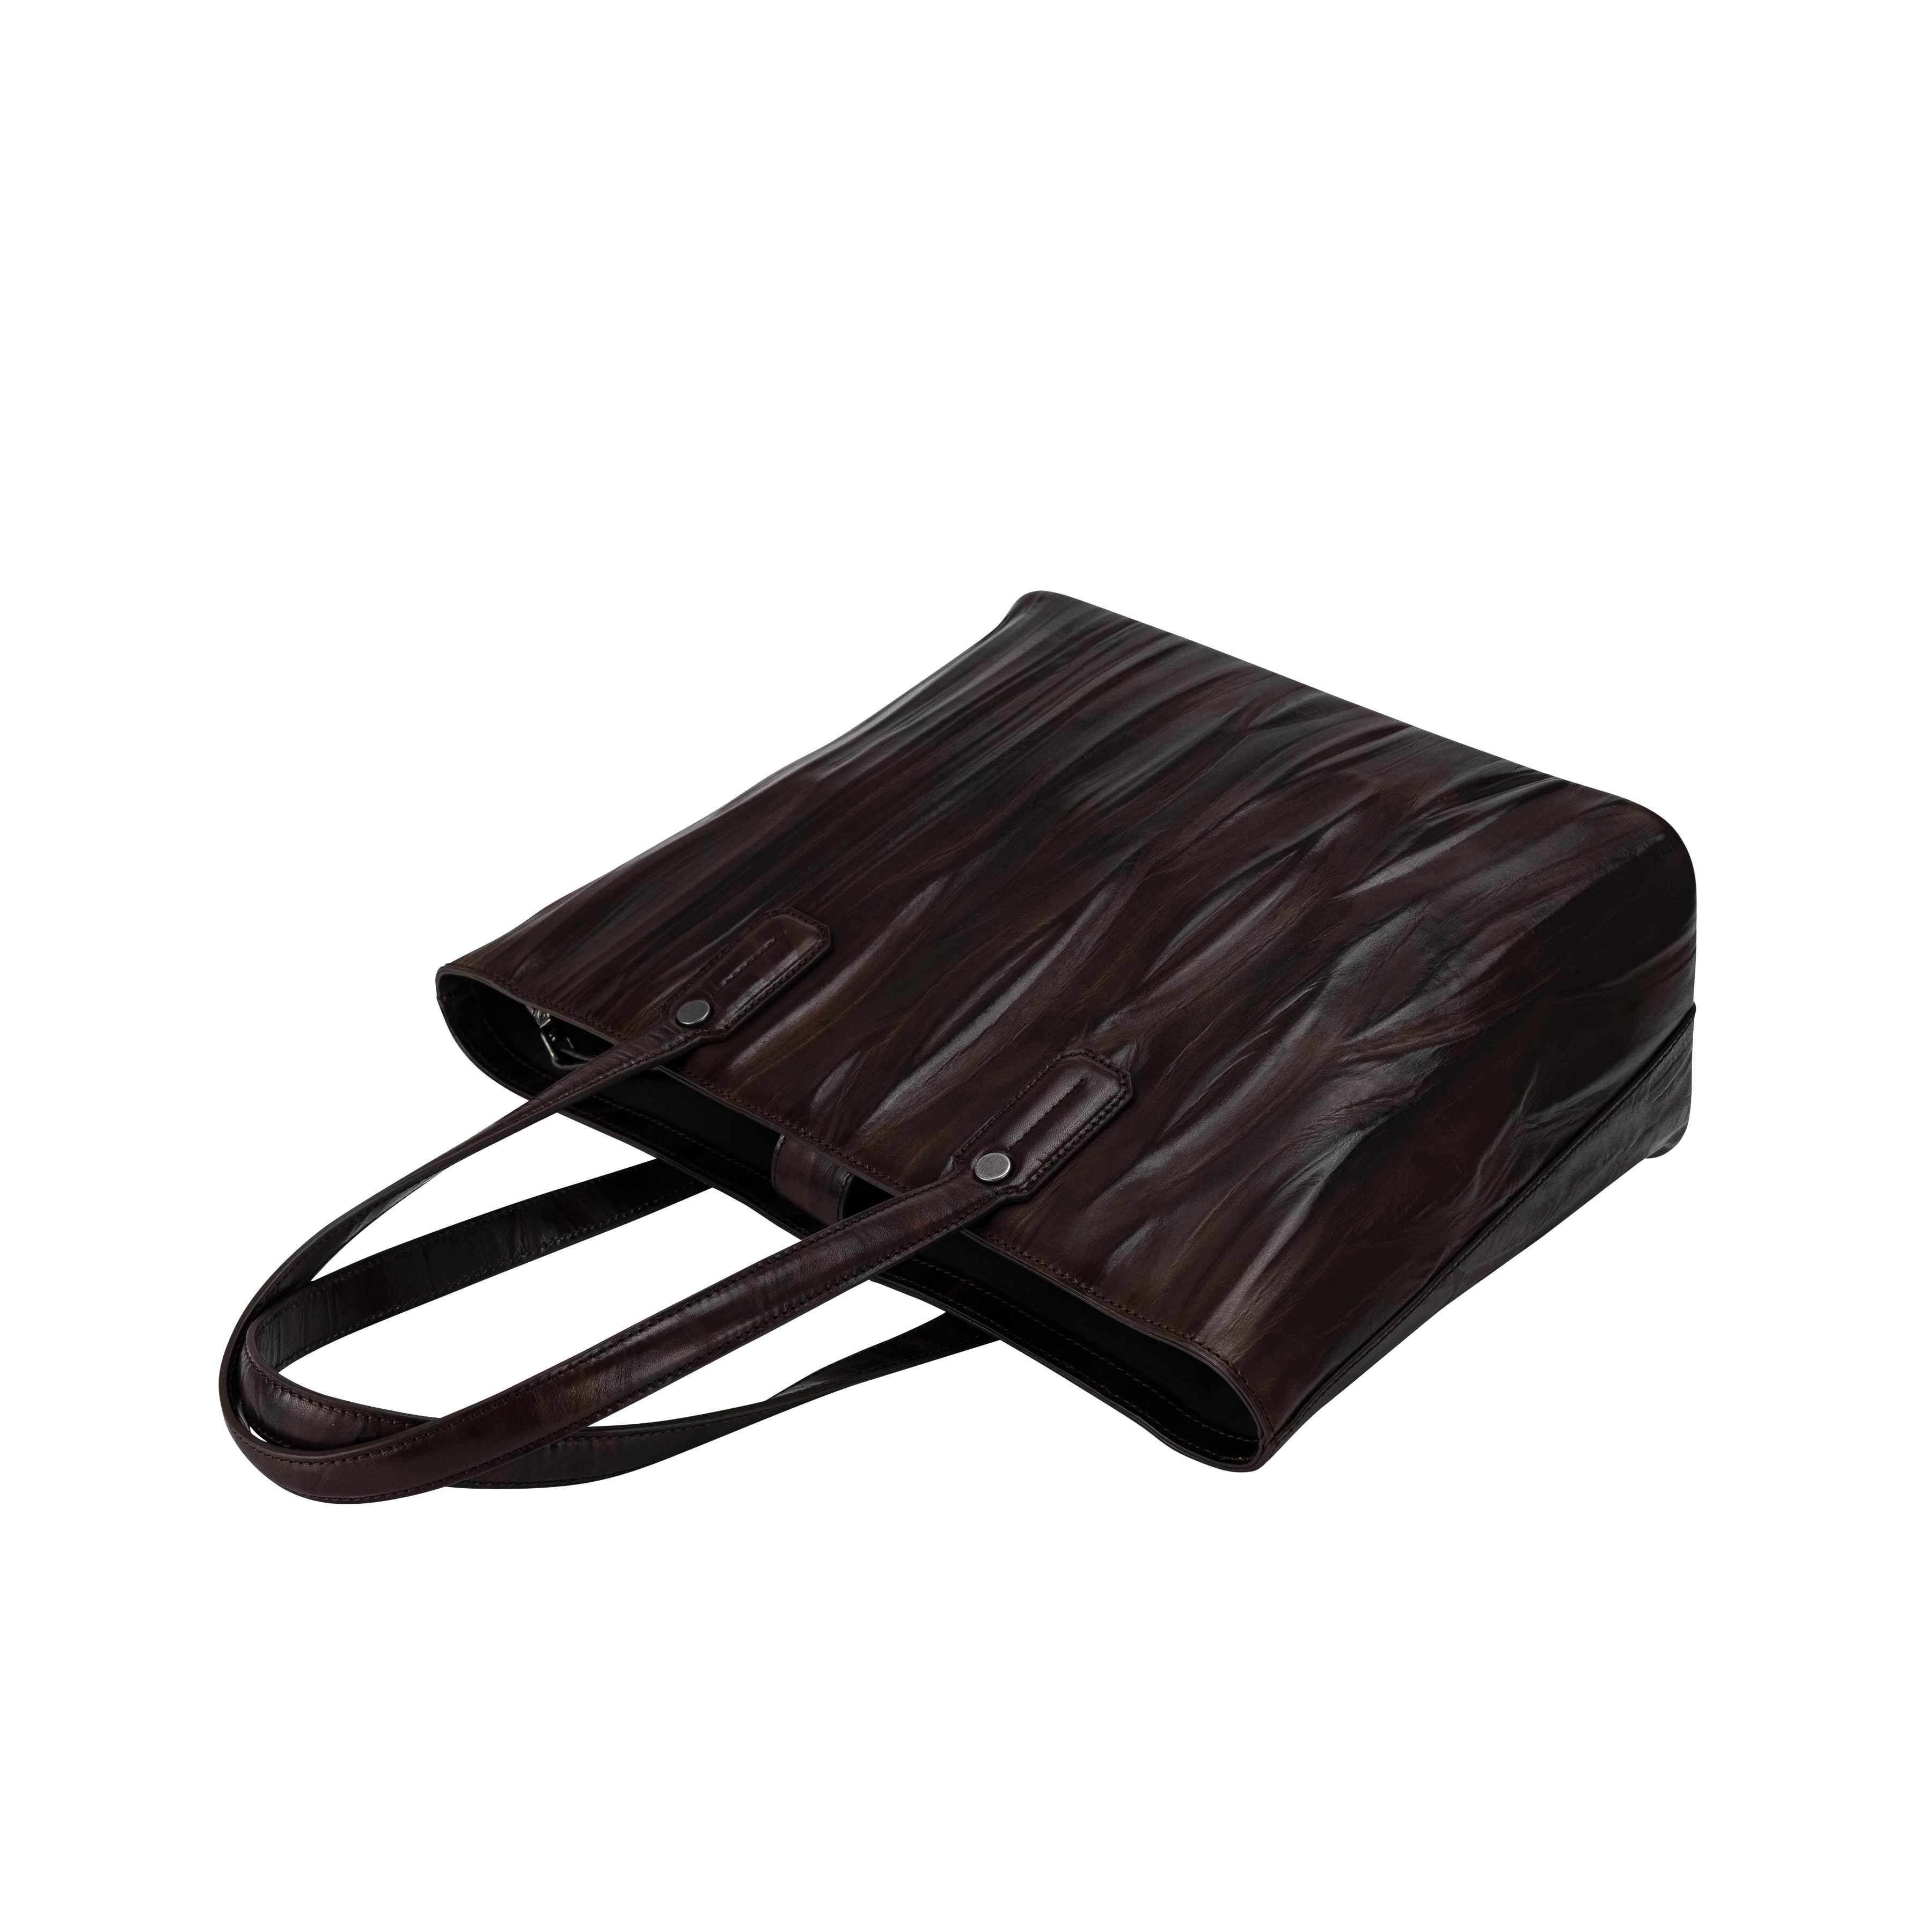 Italian leather genuine leather handbag